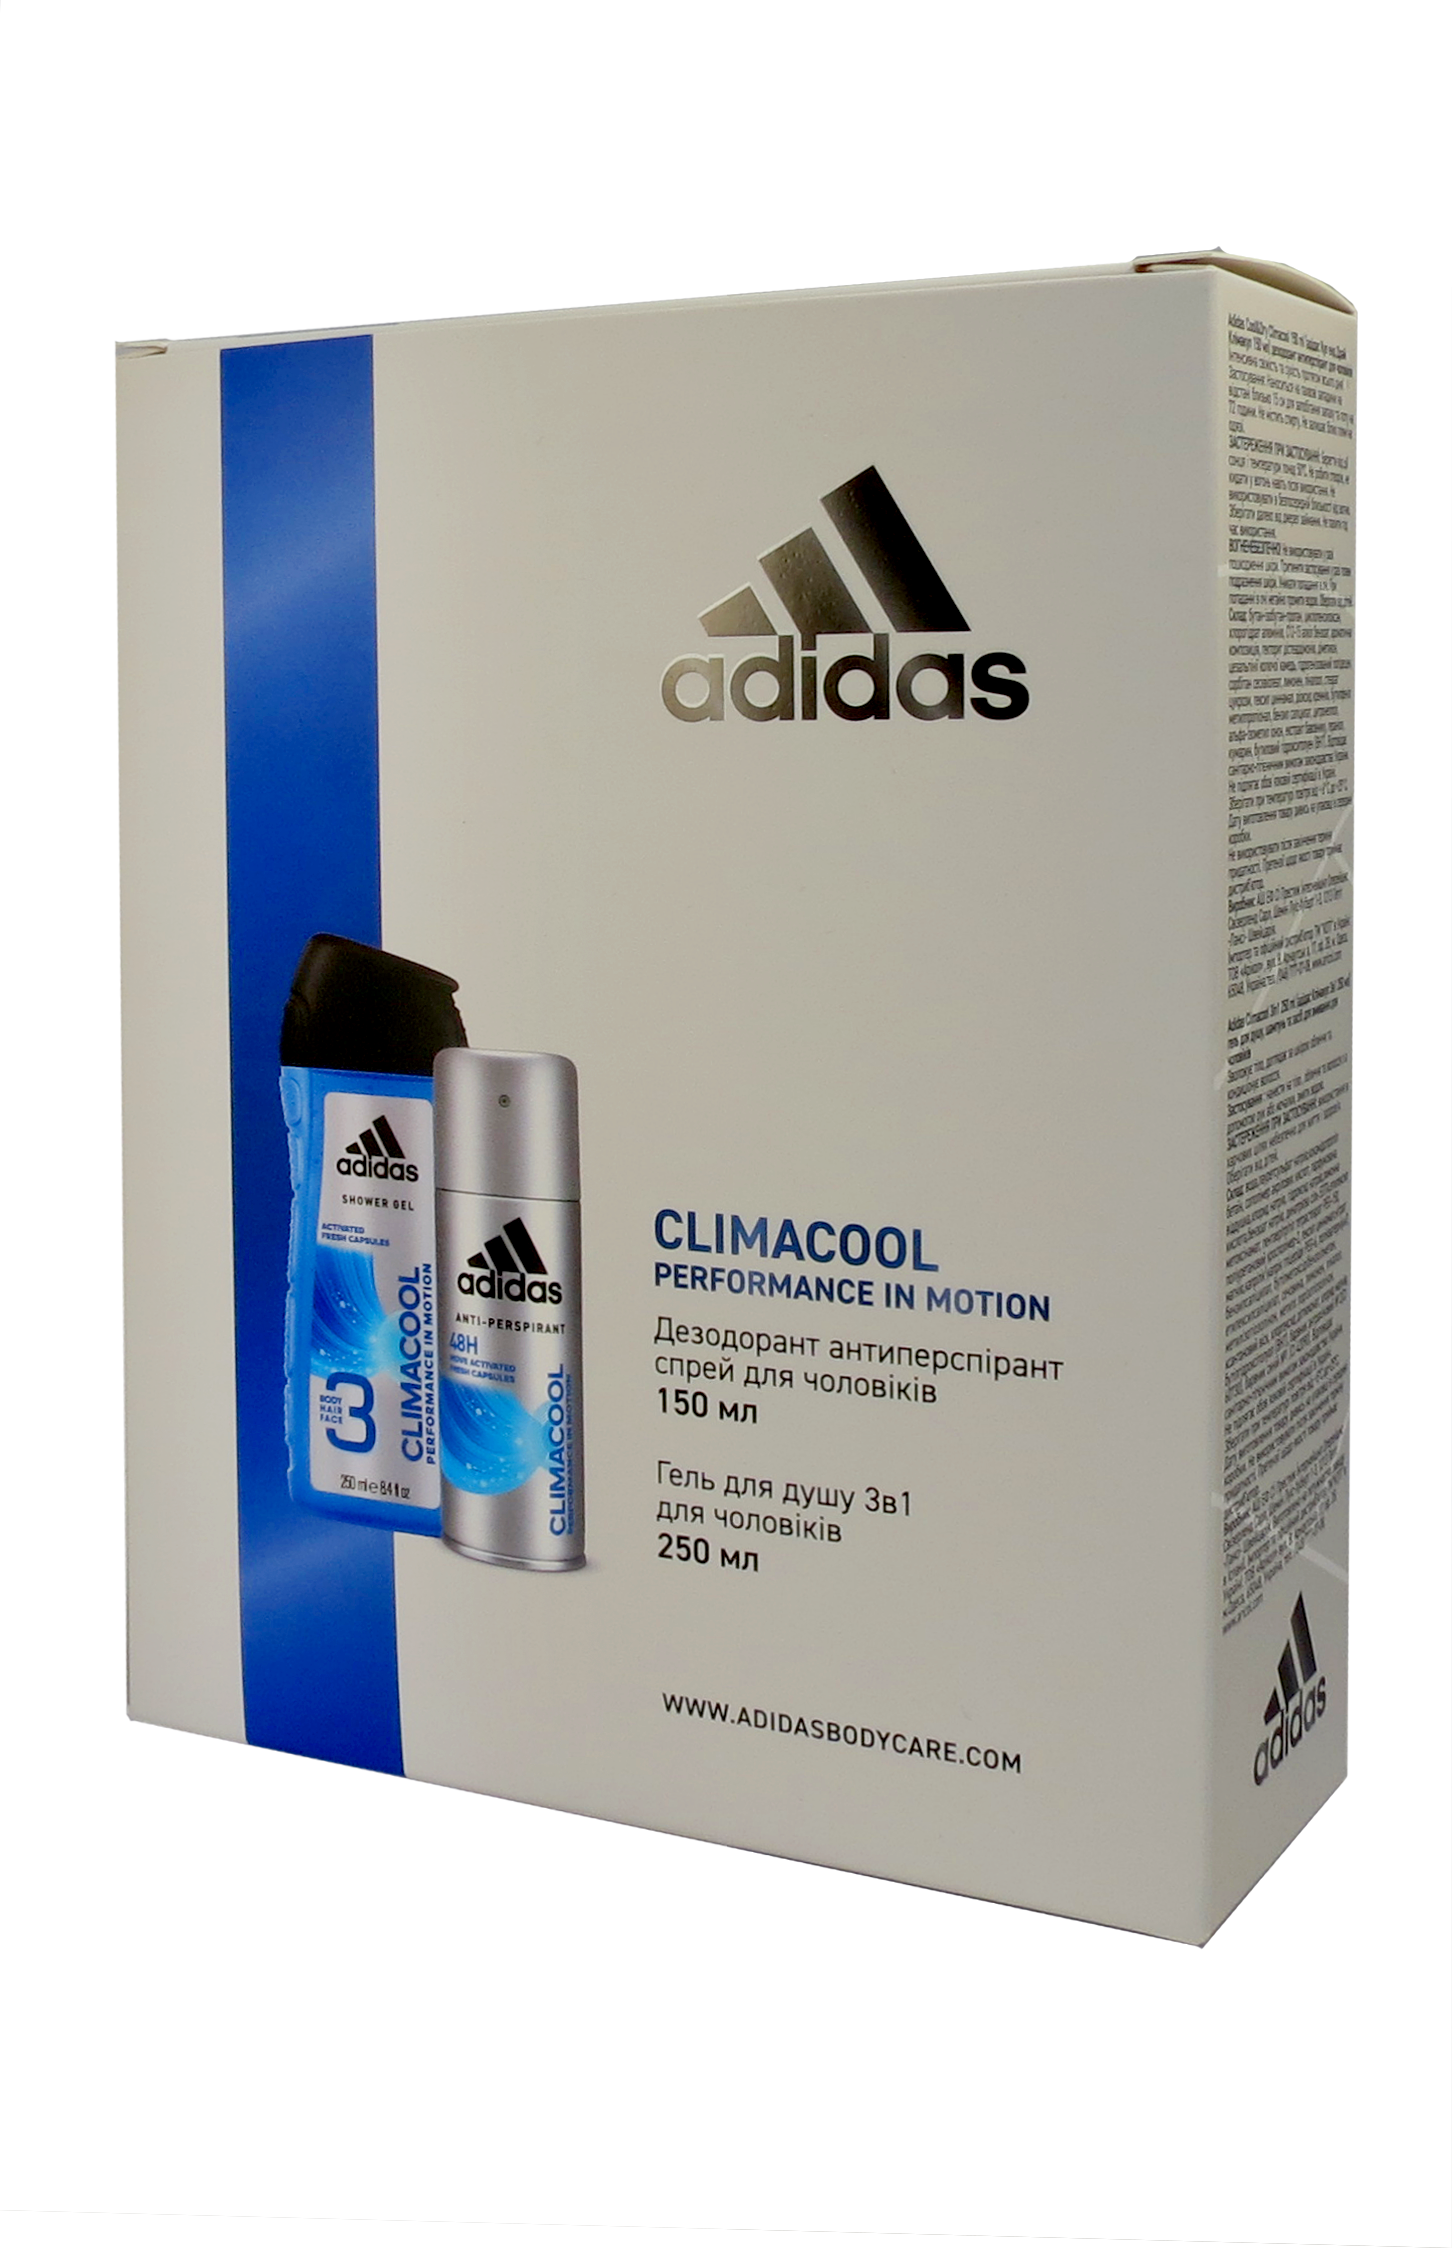 Набір для чоловіків Adidas 2020 Дезодорант-антиперспірант Climacool 150 мл + Гель для душу 3in1 Body hair and face 250 мл - фото 1